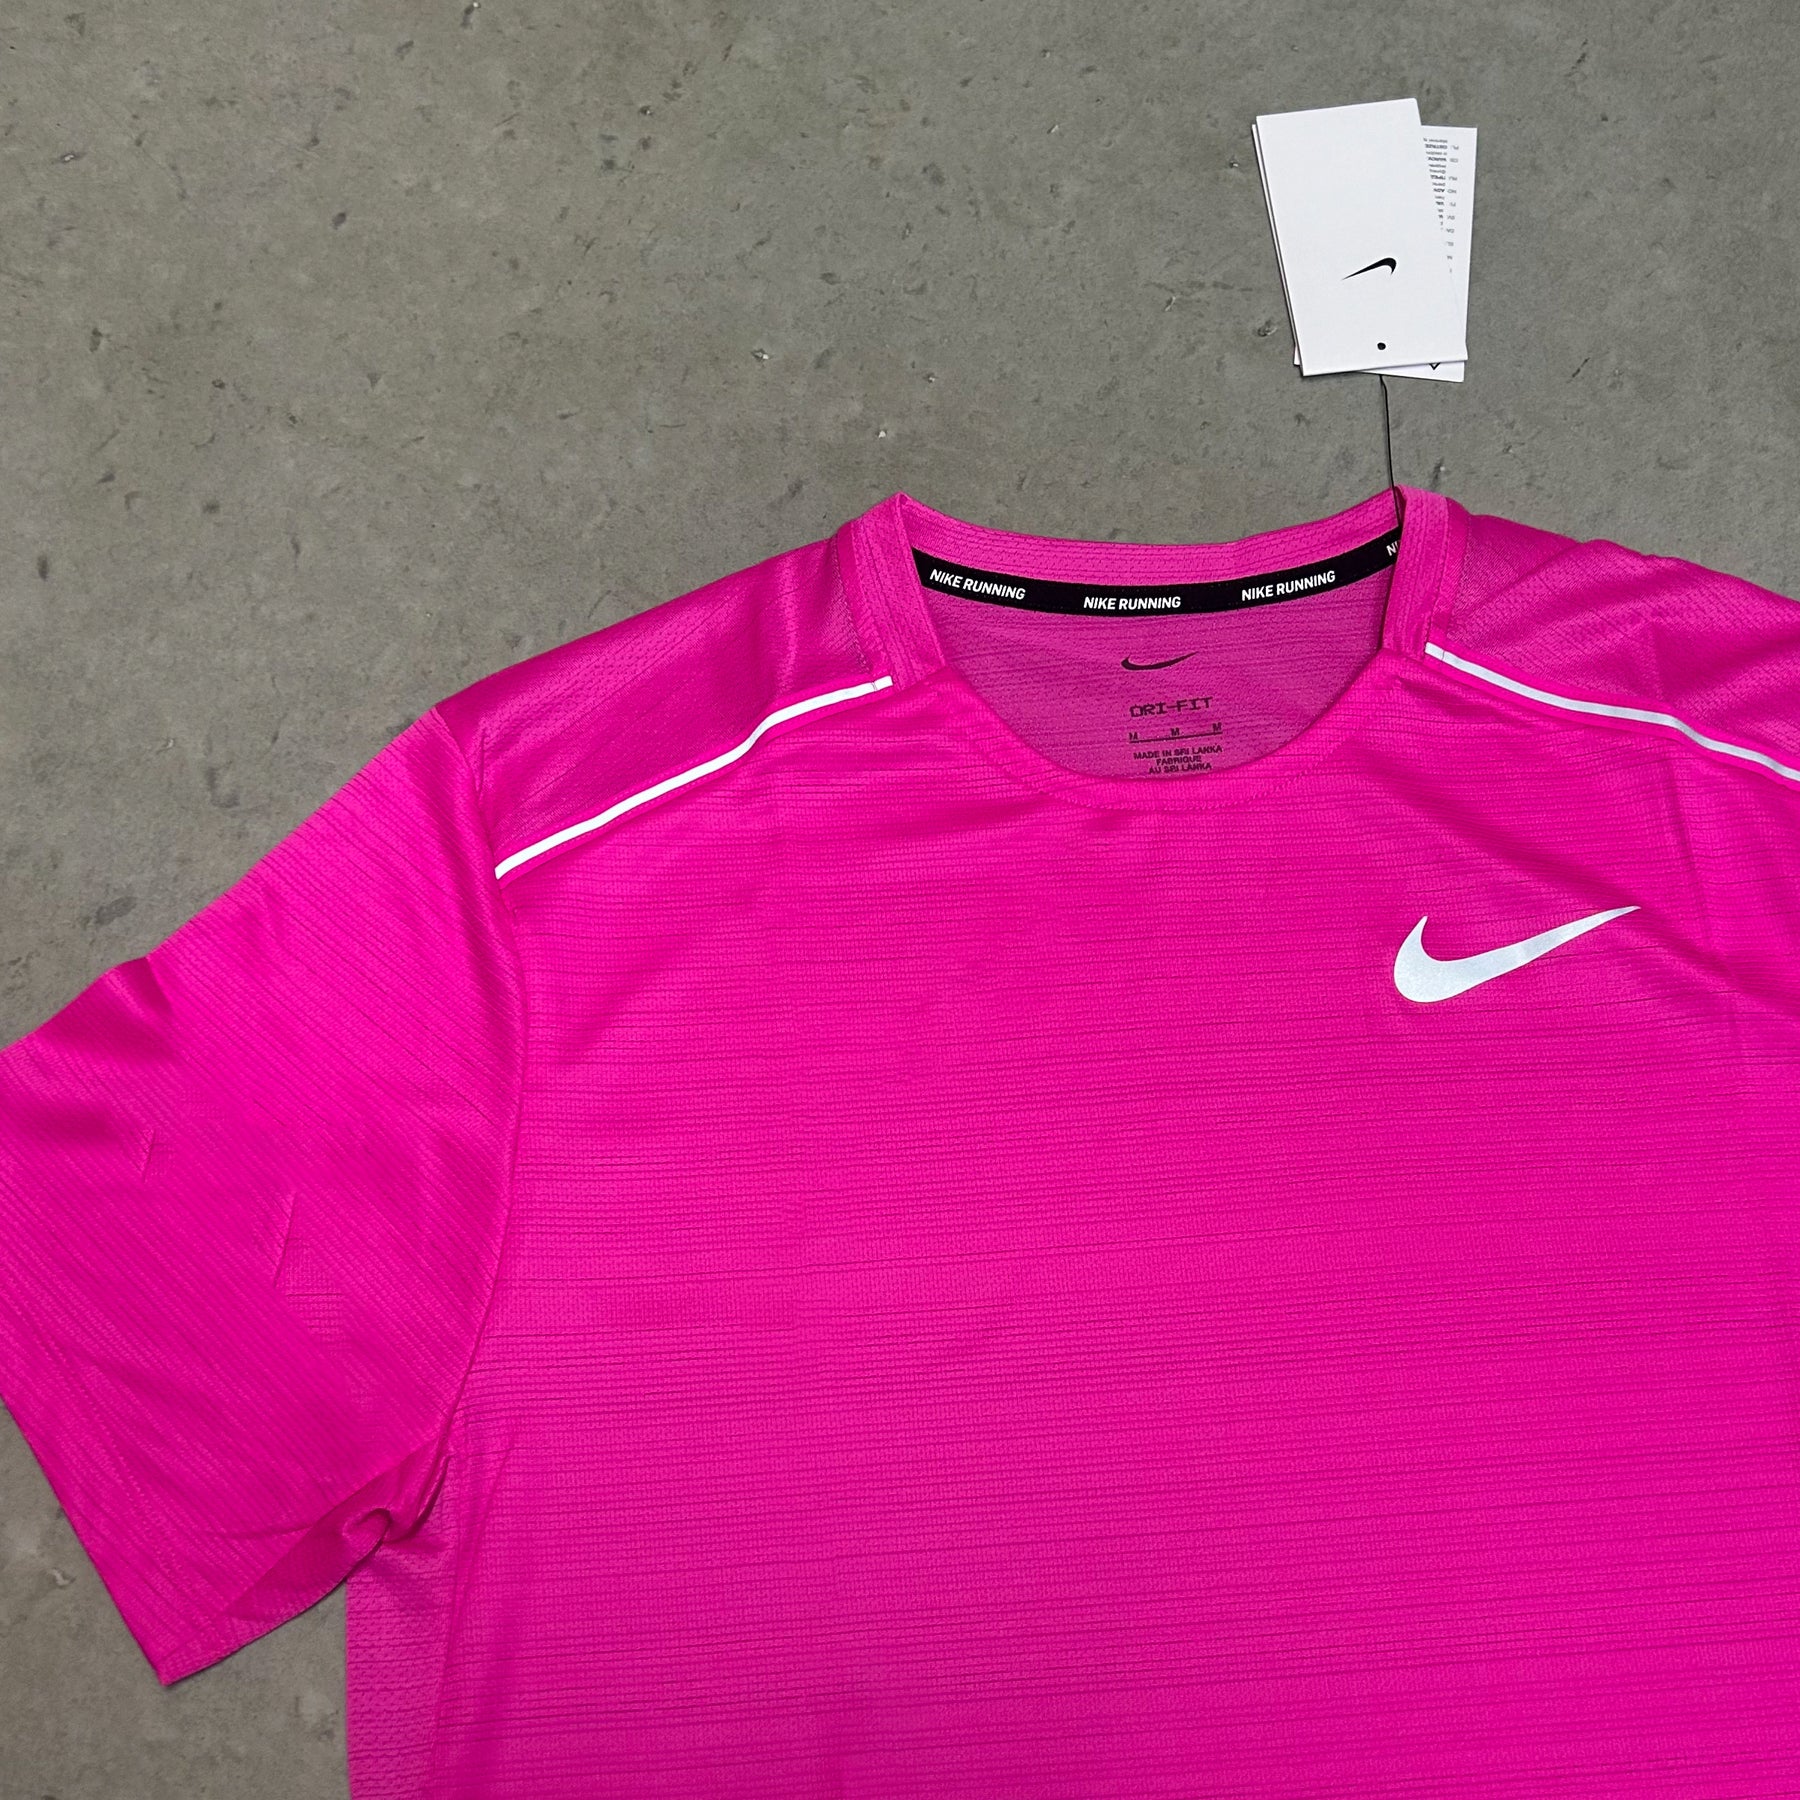 Nike Miler 1.0 Hot Pink